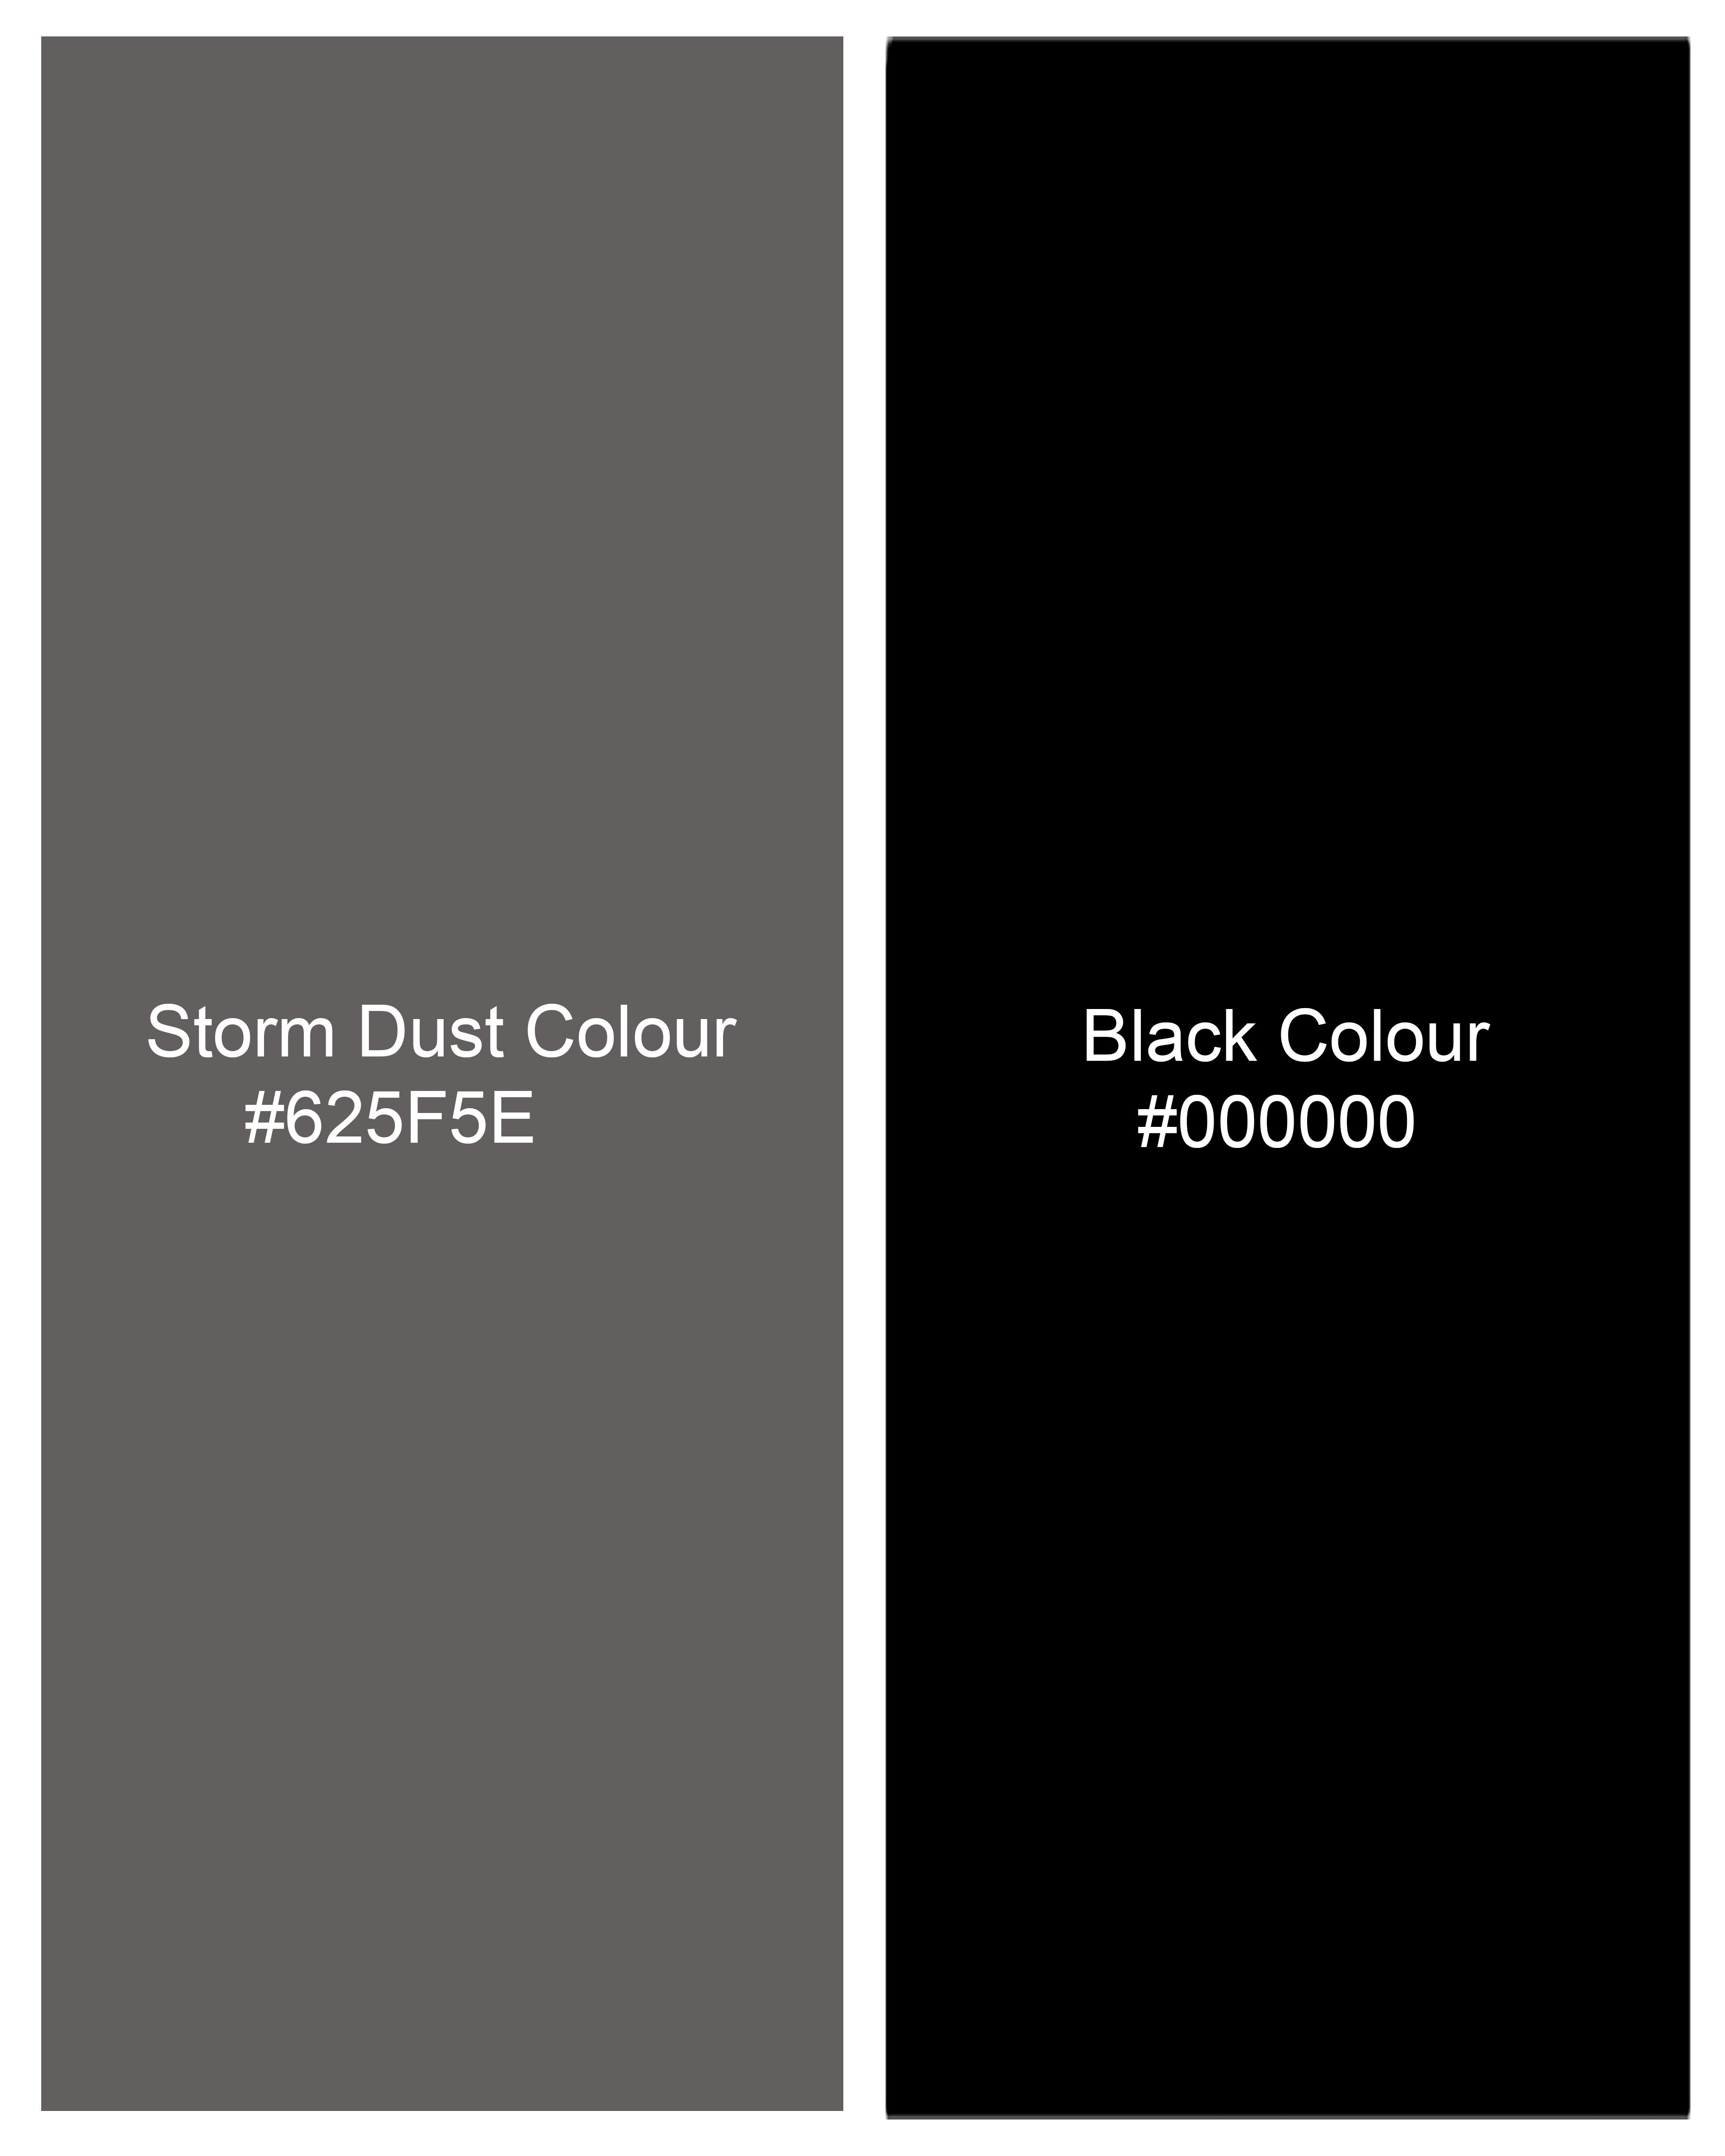 Storm Dust Gray Plaid Waistcoat V2267-36, V2267-38, V2267-40, V2267-42, V2267-44, V2267-46, V2267-48, V2267-50, V2267-52, V2267-54, V2267-56, V2267-58, V2267-60